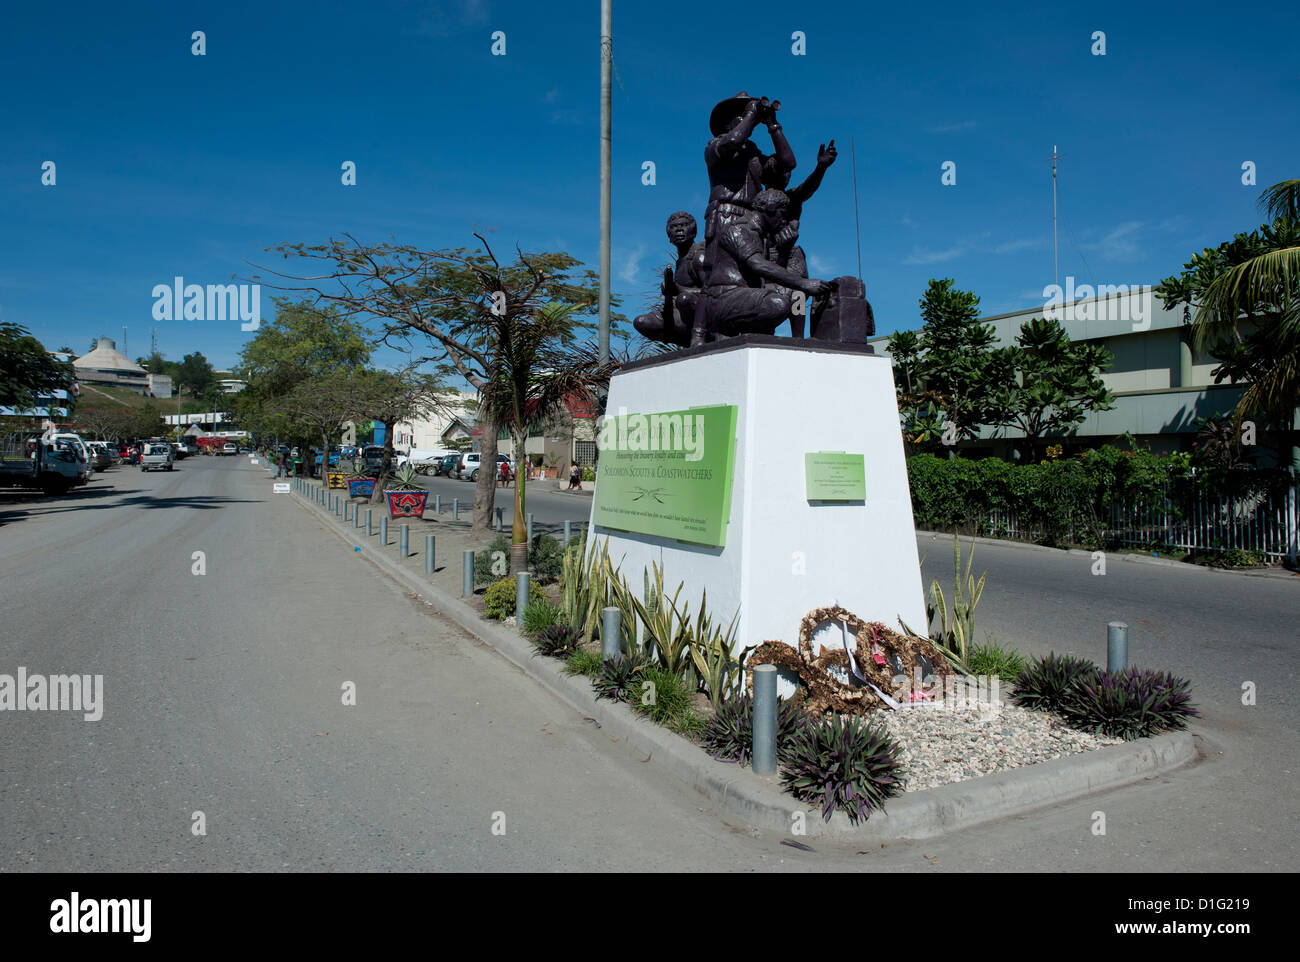 Second World War Memorial in der Mitte von Honiara, Hauptstadt der Salomonen,  Pazifik Stockfotografie - Alamy